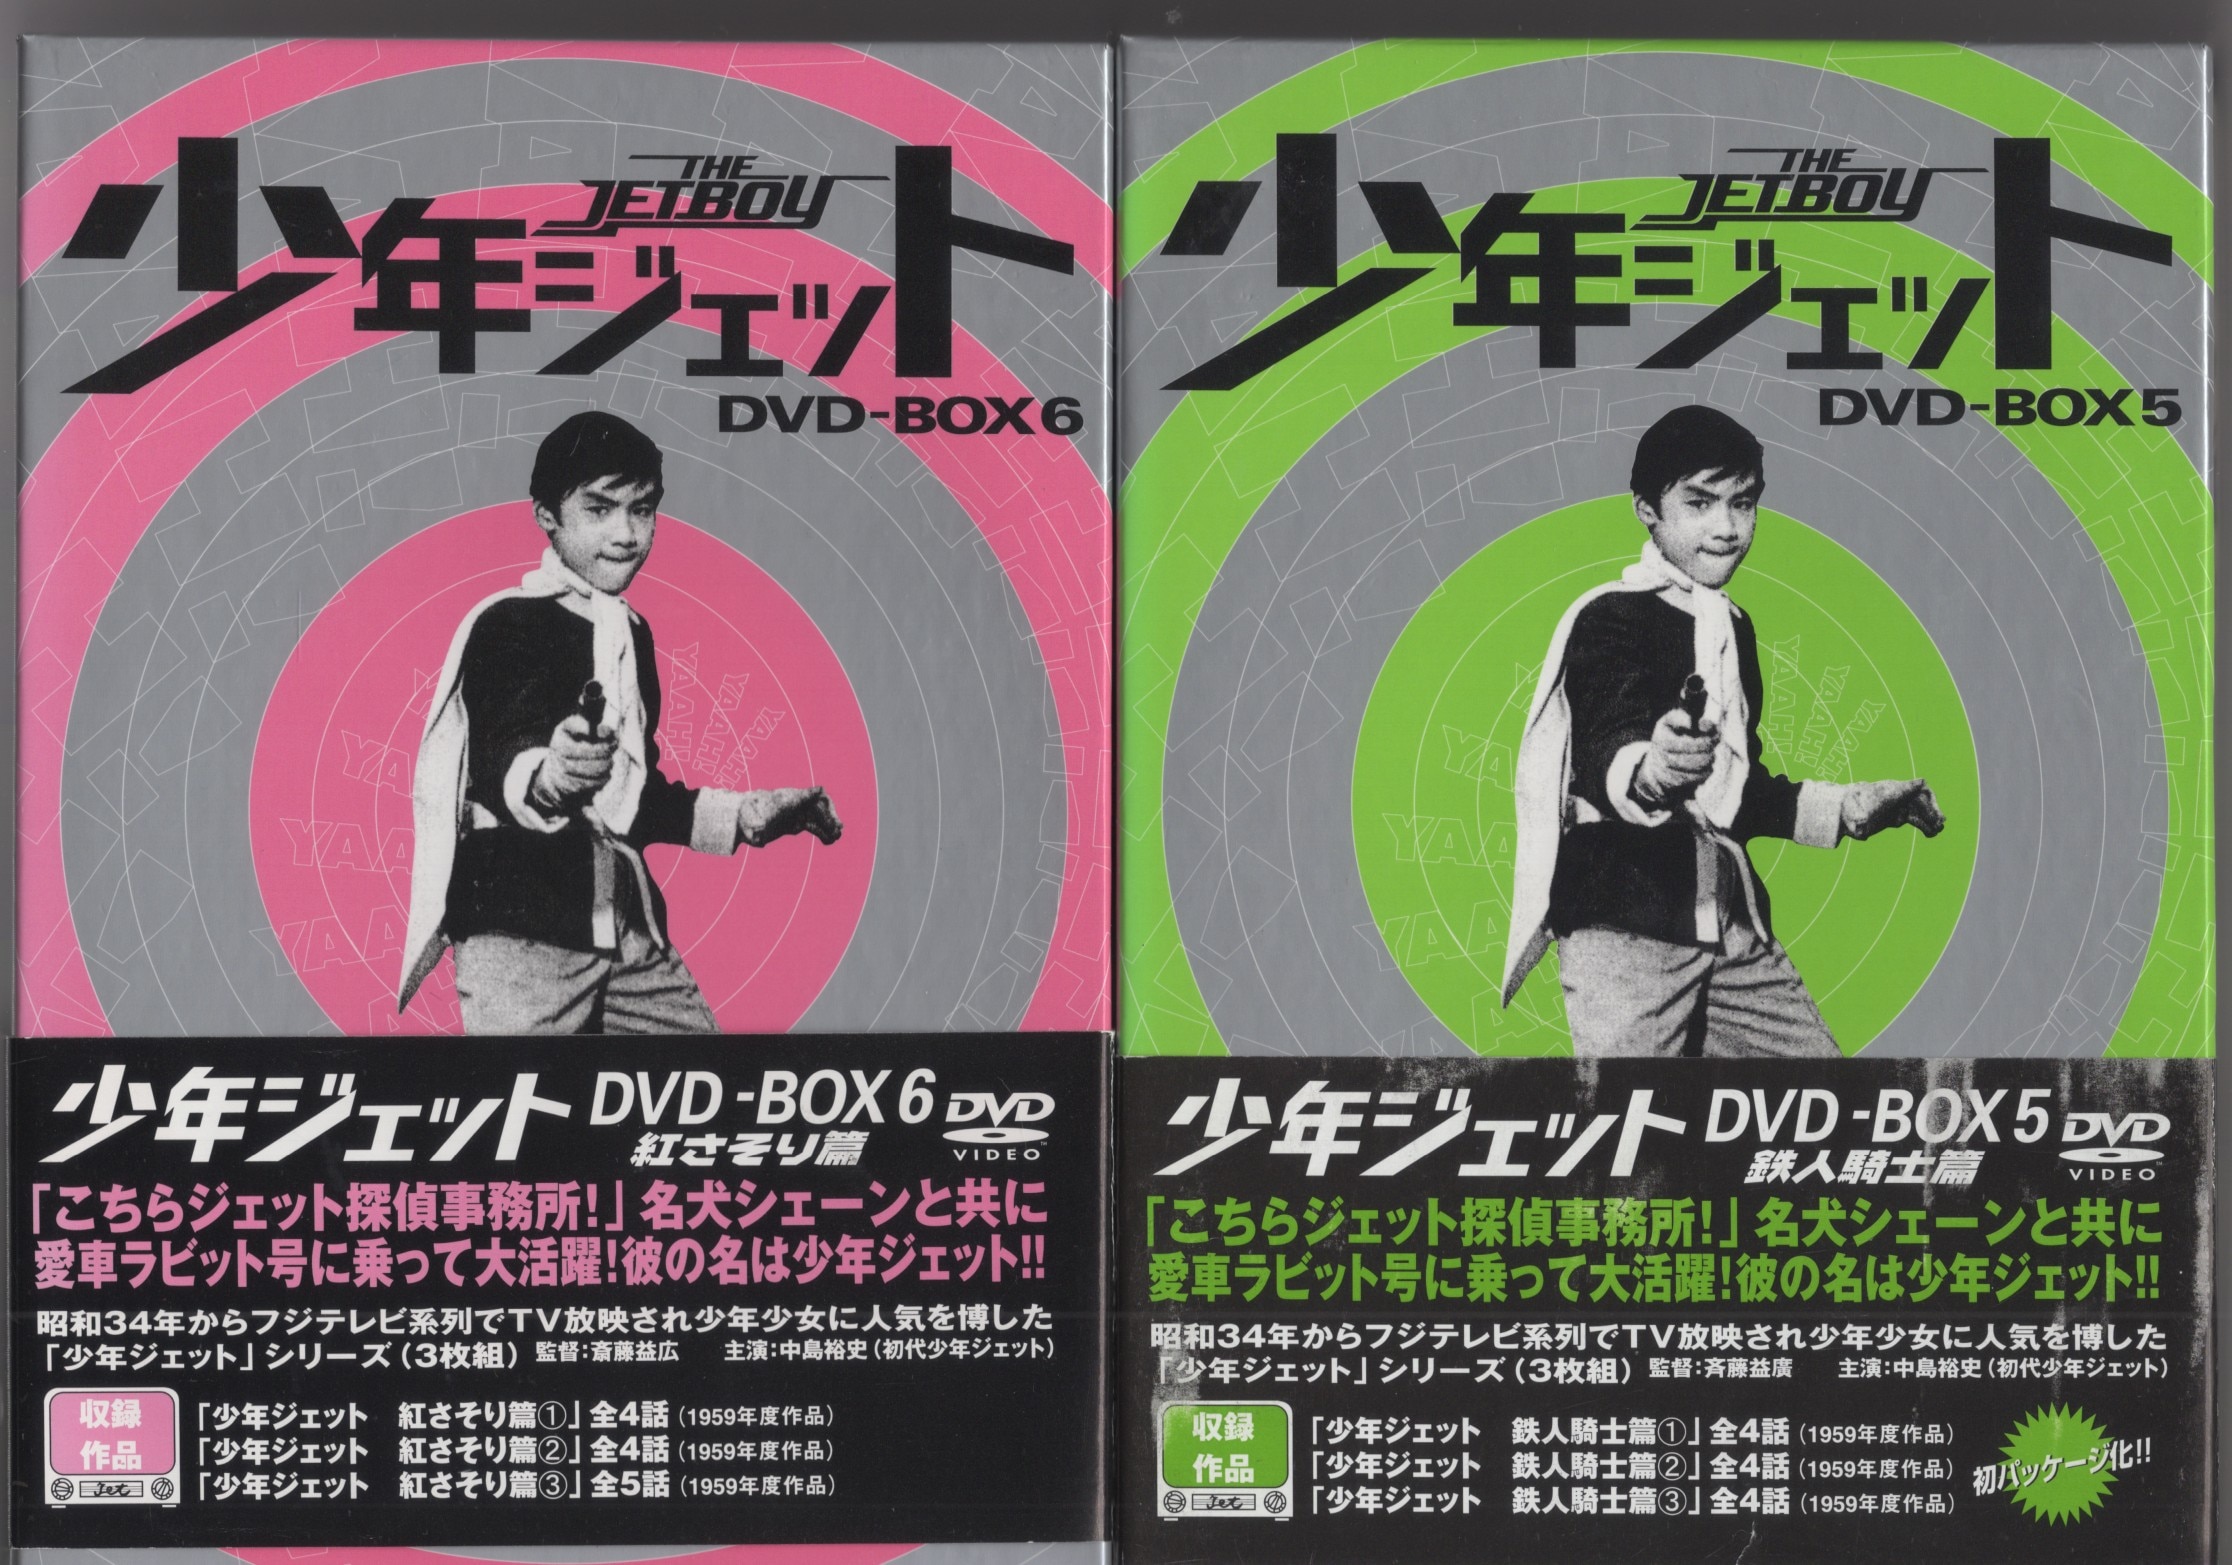 専門店では 5 邦画 少年ジェットDVD- 【未使用】少年ジェット - DVD